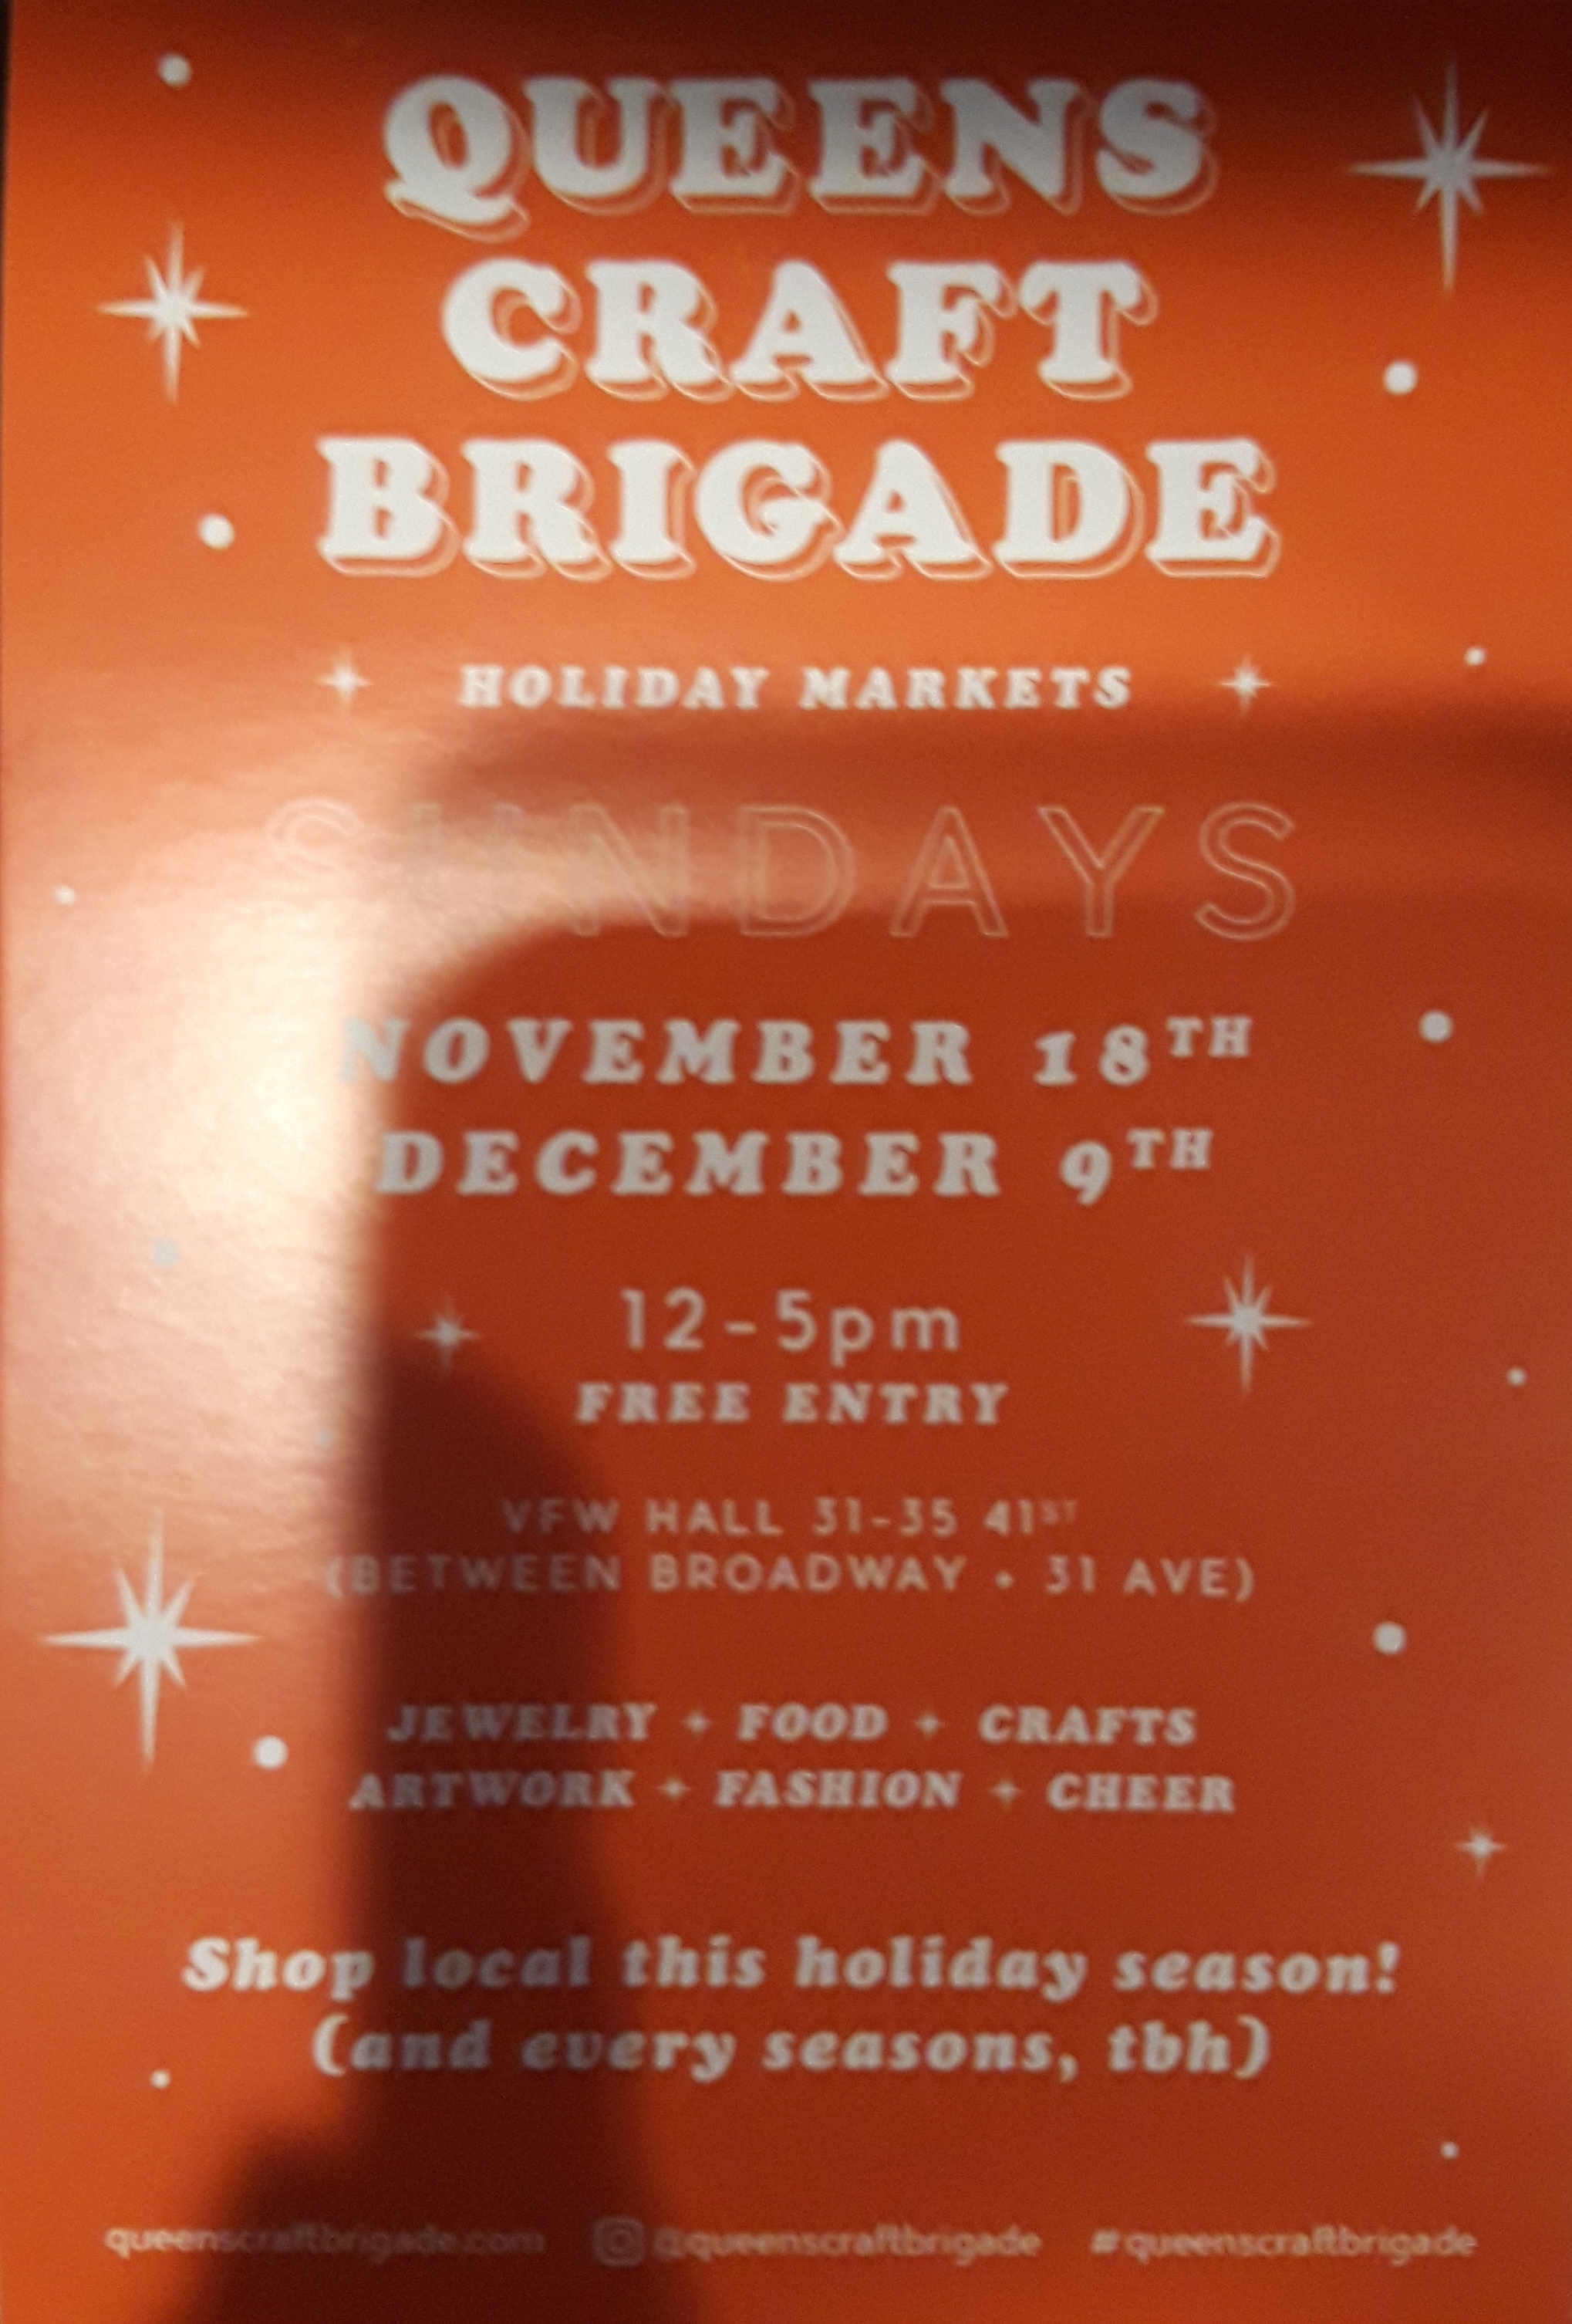 Queens Craft Brigade holiday markets